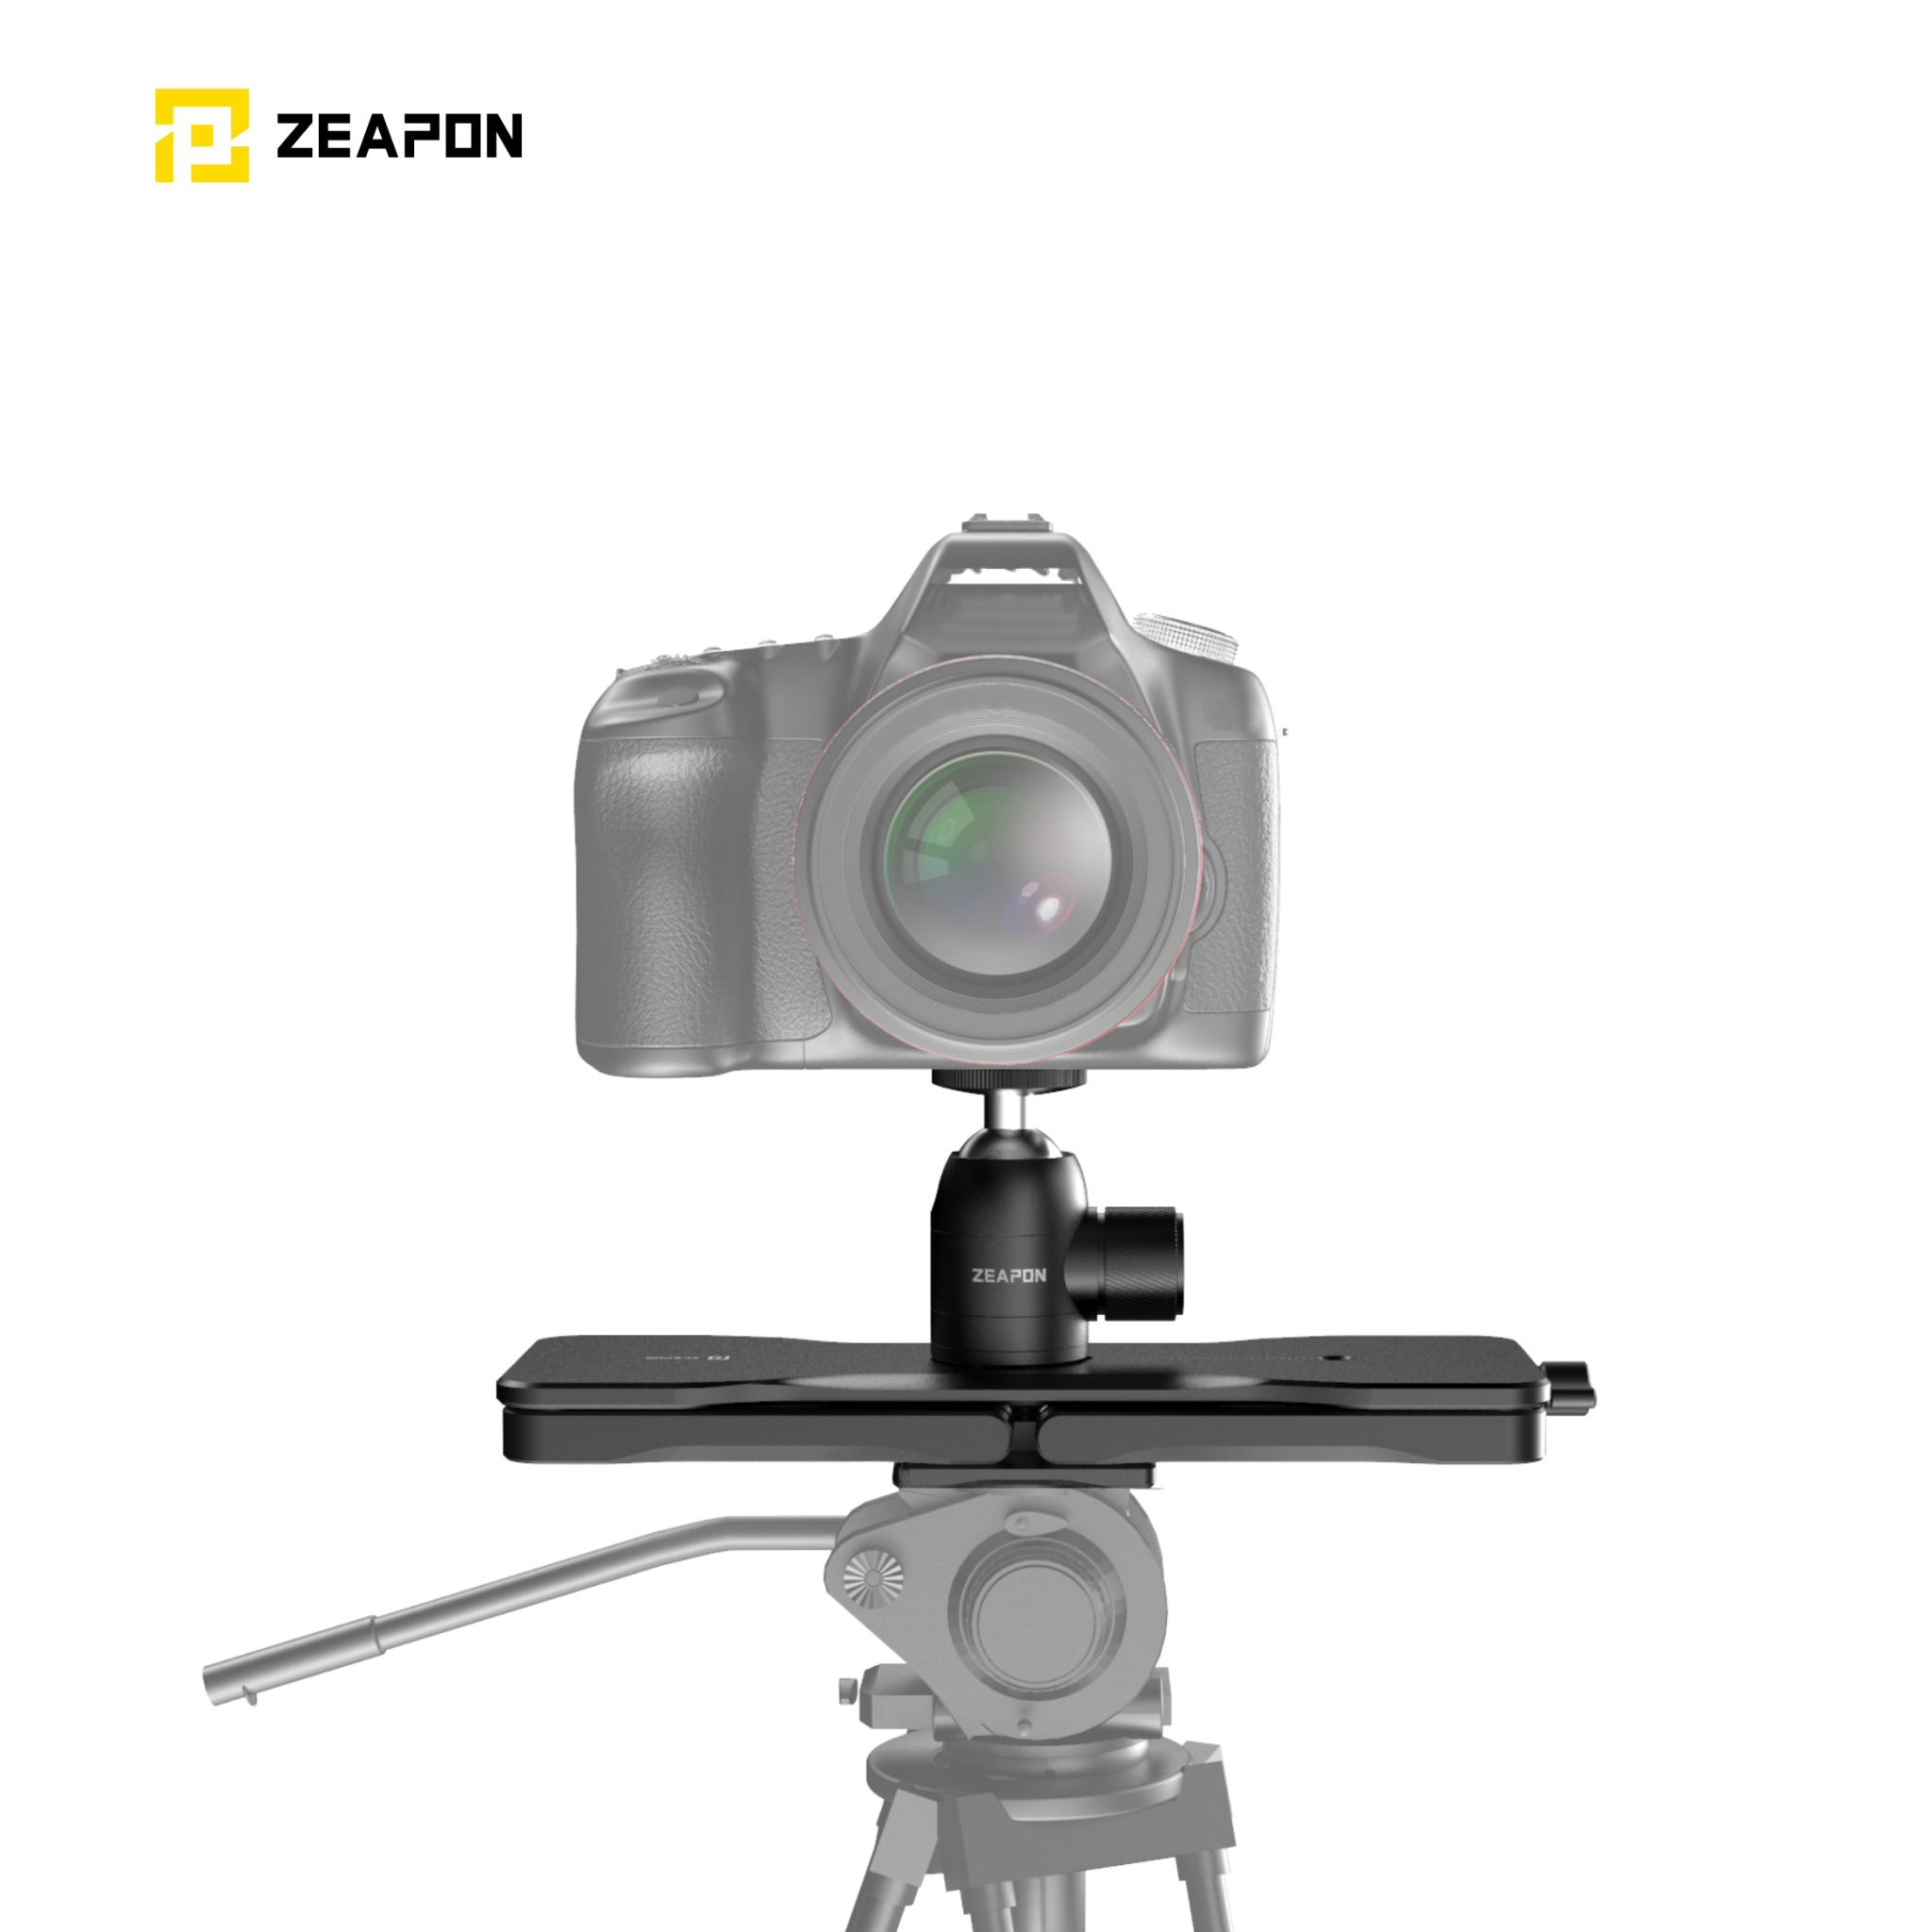 Easylock2 Kit / ZEAPON